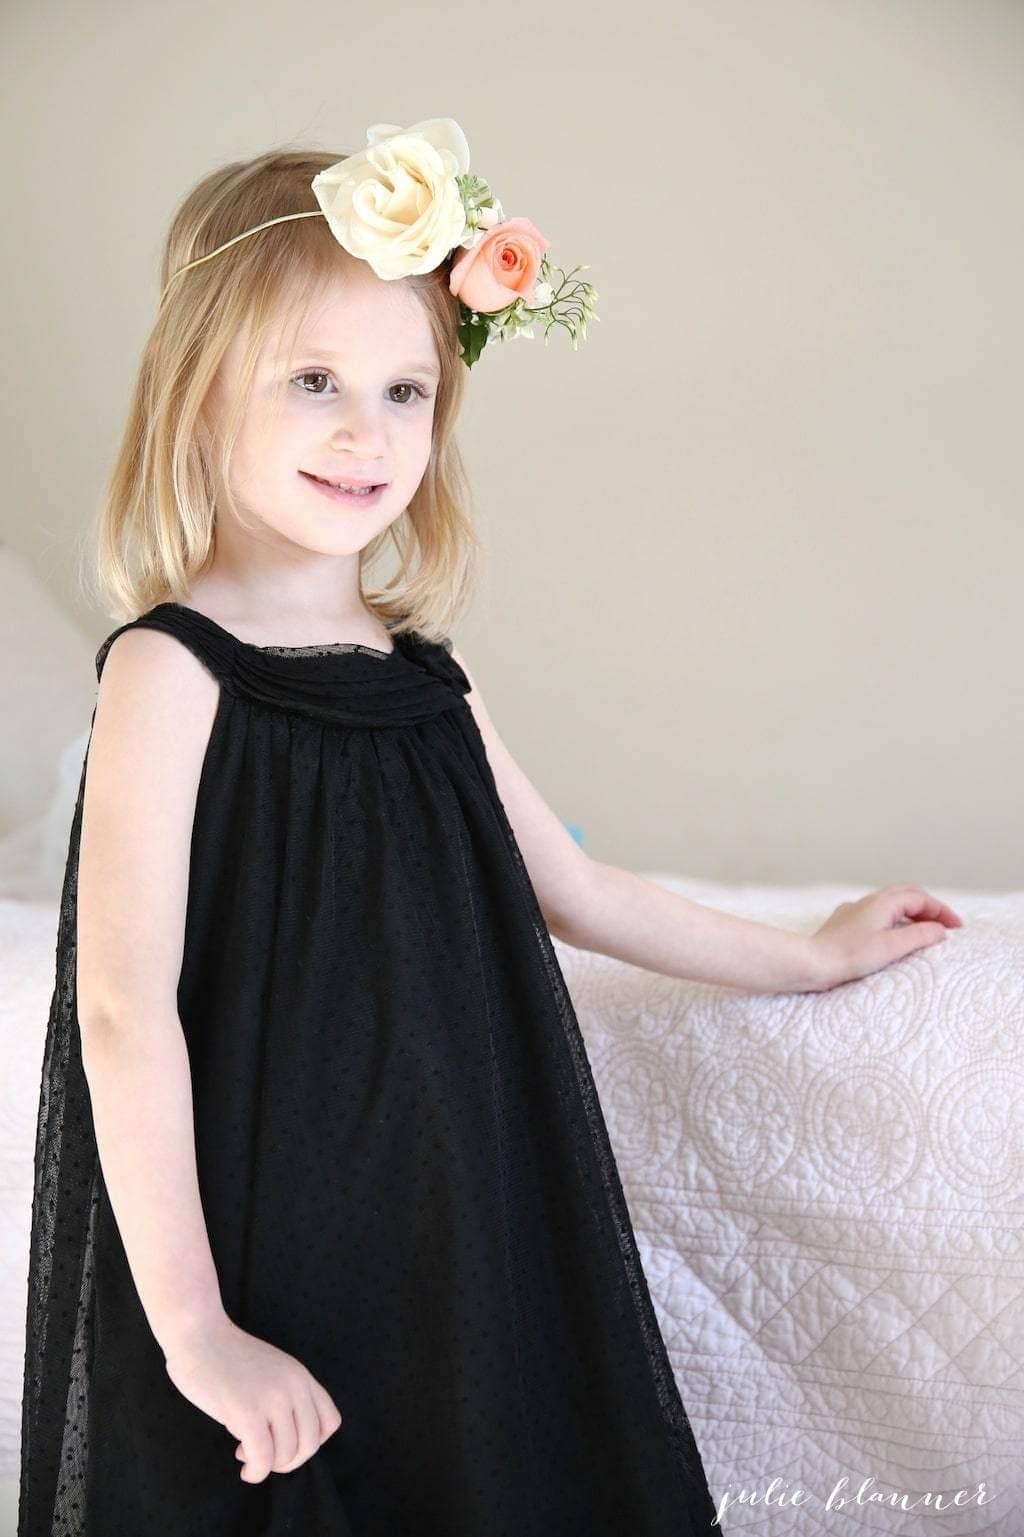 A little girl in a black dress wearing a DIY flower crown.